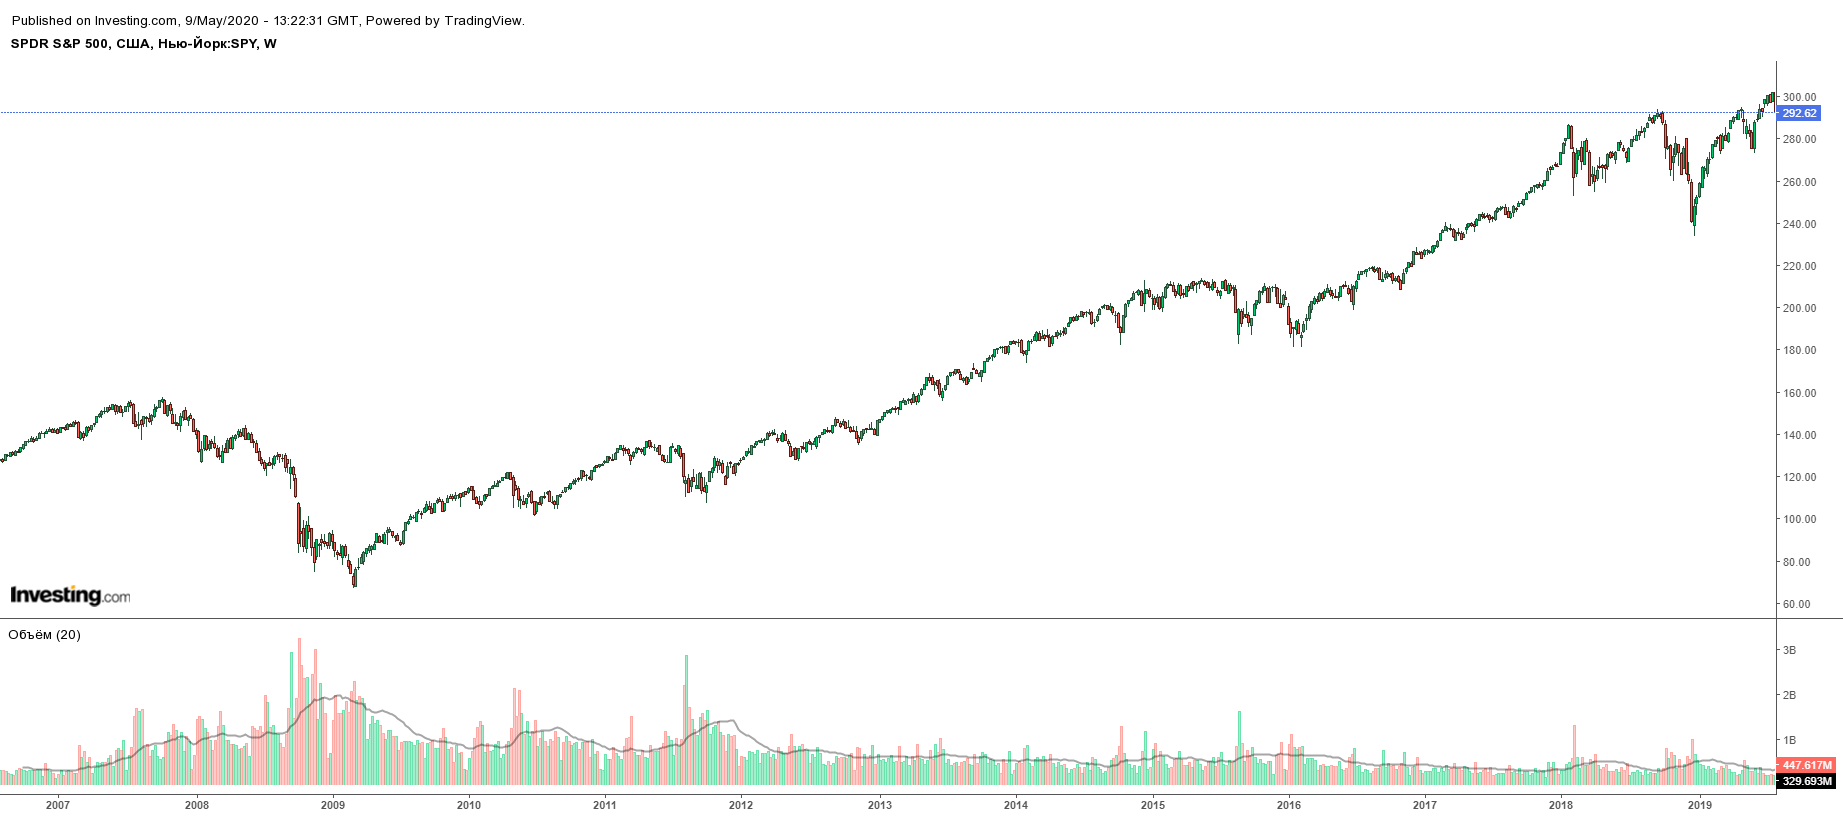 Недельный график цены ETF SPY — биржевого фонда на американский индекс S&P; 500. Во время финансового кризиса 2007—2008 годов цены упали, но потом выросли. В конце 2018 и весной 2020 цены тоже упали, а потом выросли